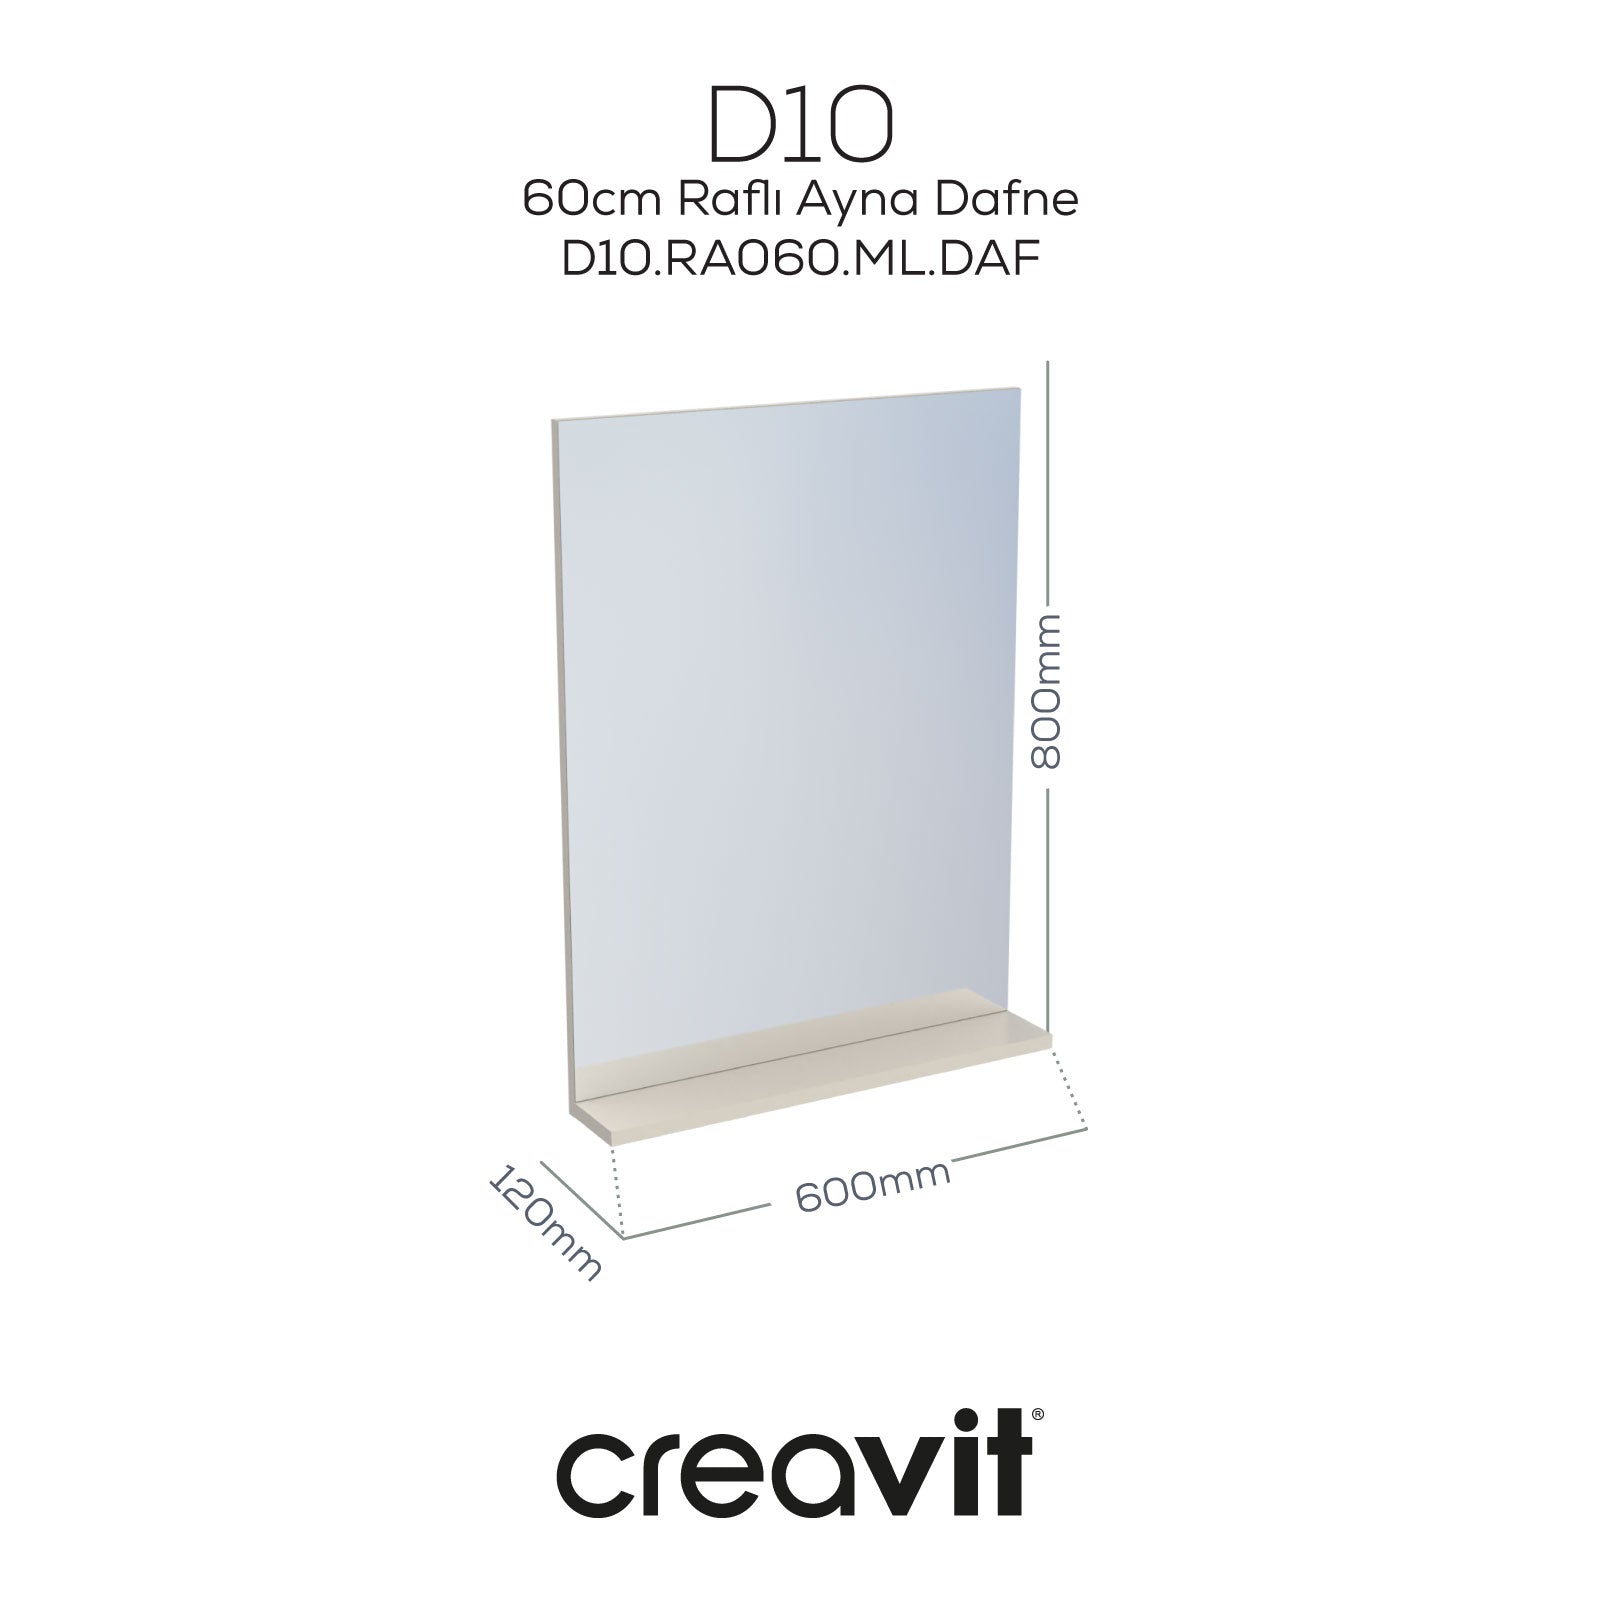 D10 60 cm Melamin Raflı Ayna Dafne - Creavit | Banyo Bu Tarafta